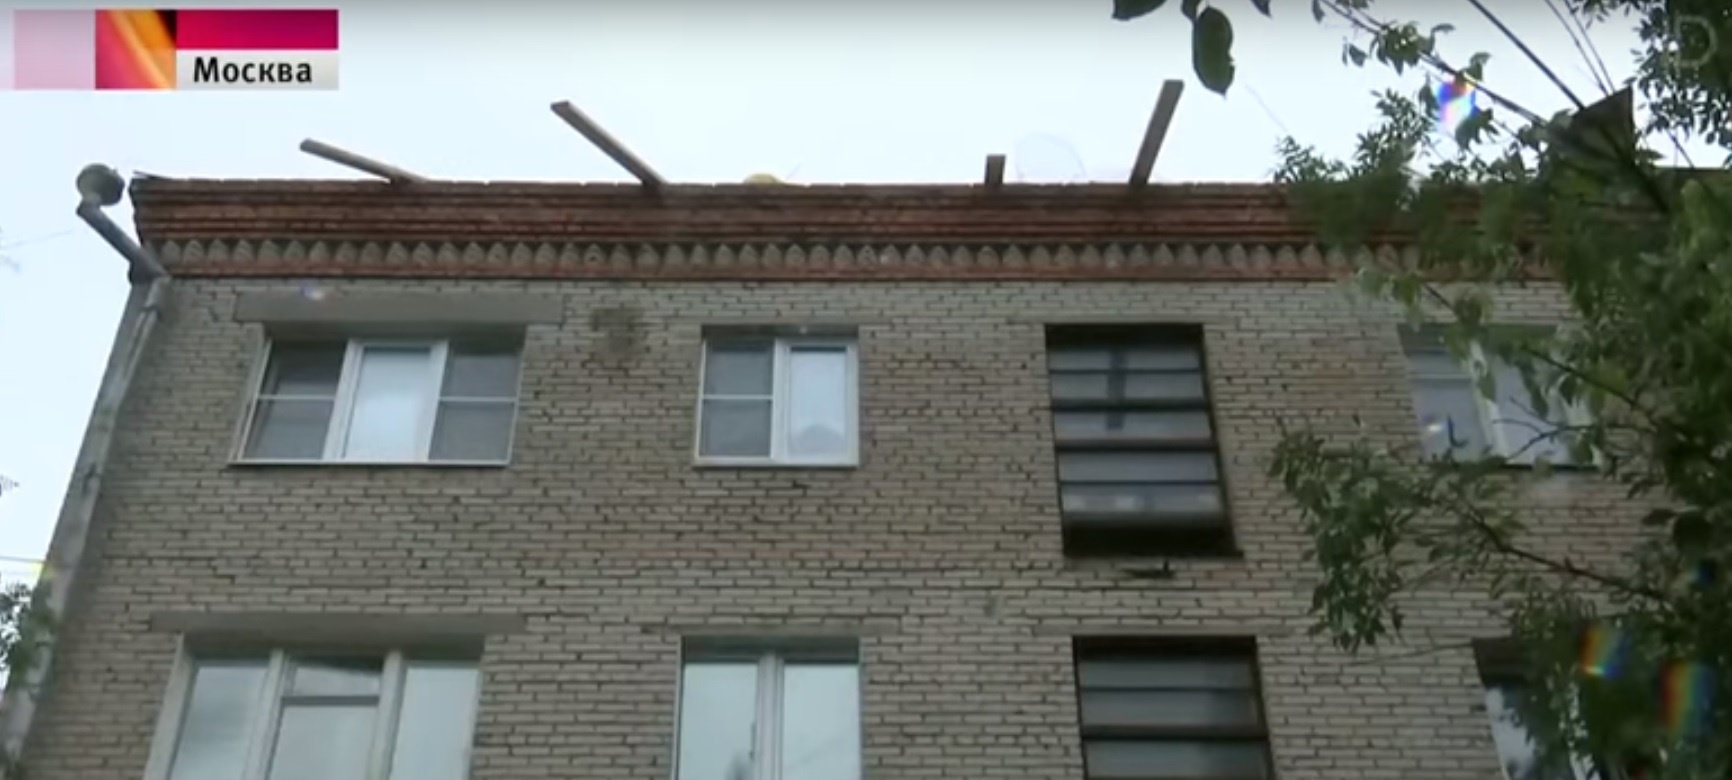 Аномальный ливень затопил дом в Лобне, оказавшийся без крыши из-за ремонта